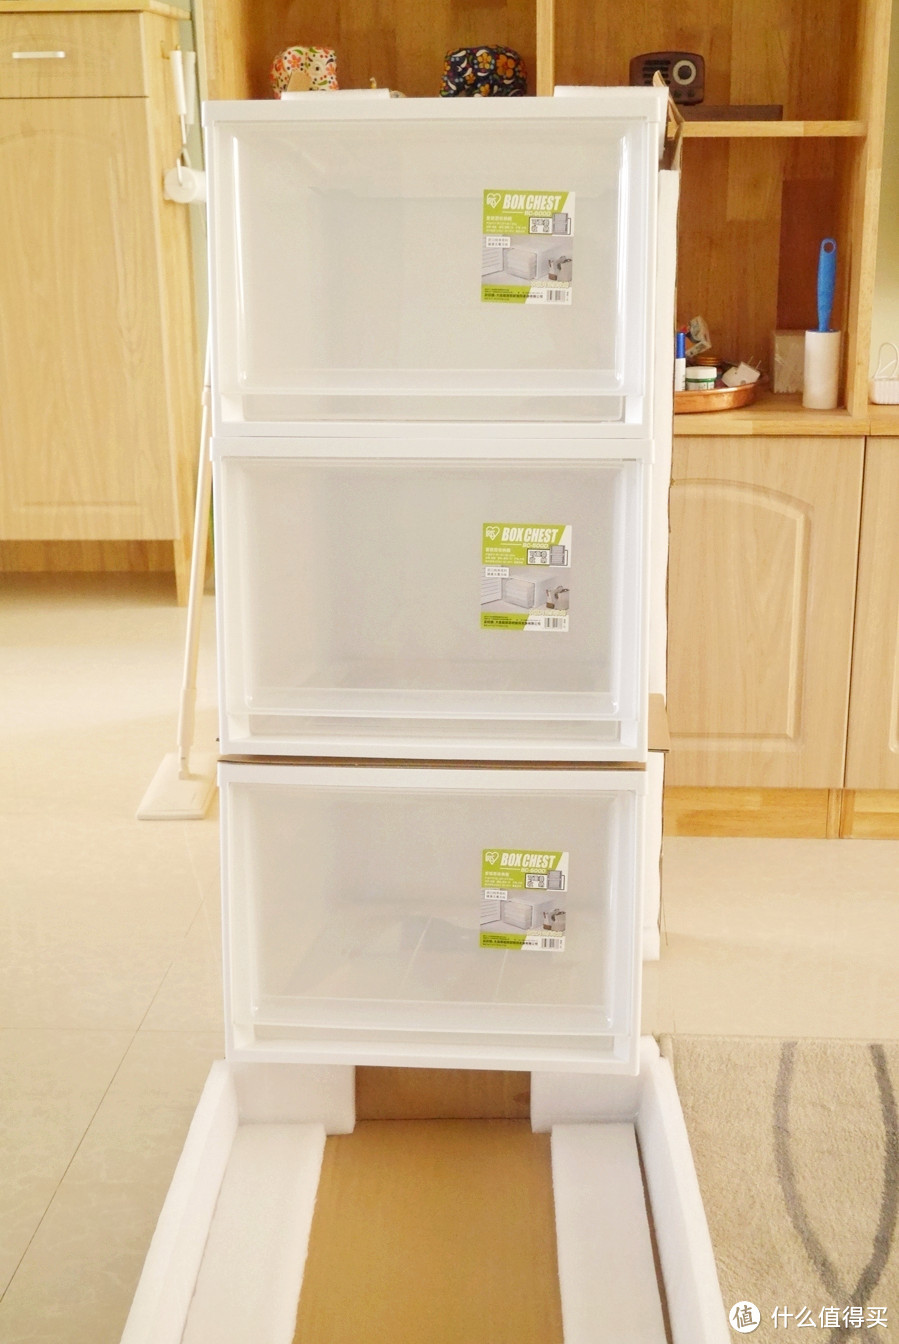 衣柜收纳神器——IRIS 爱丽思 BC-500系列 可叠加收纳箱